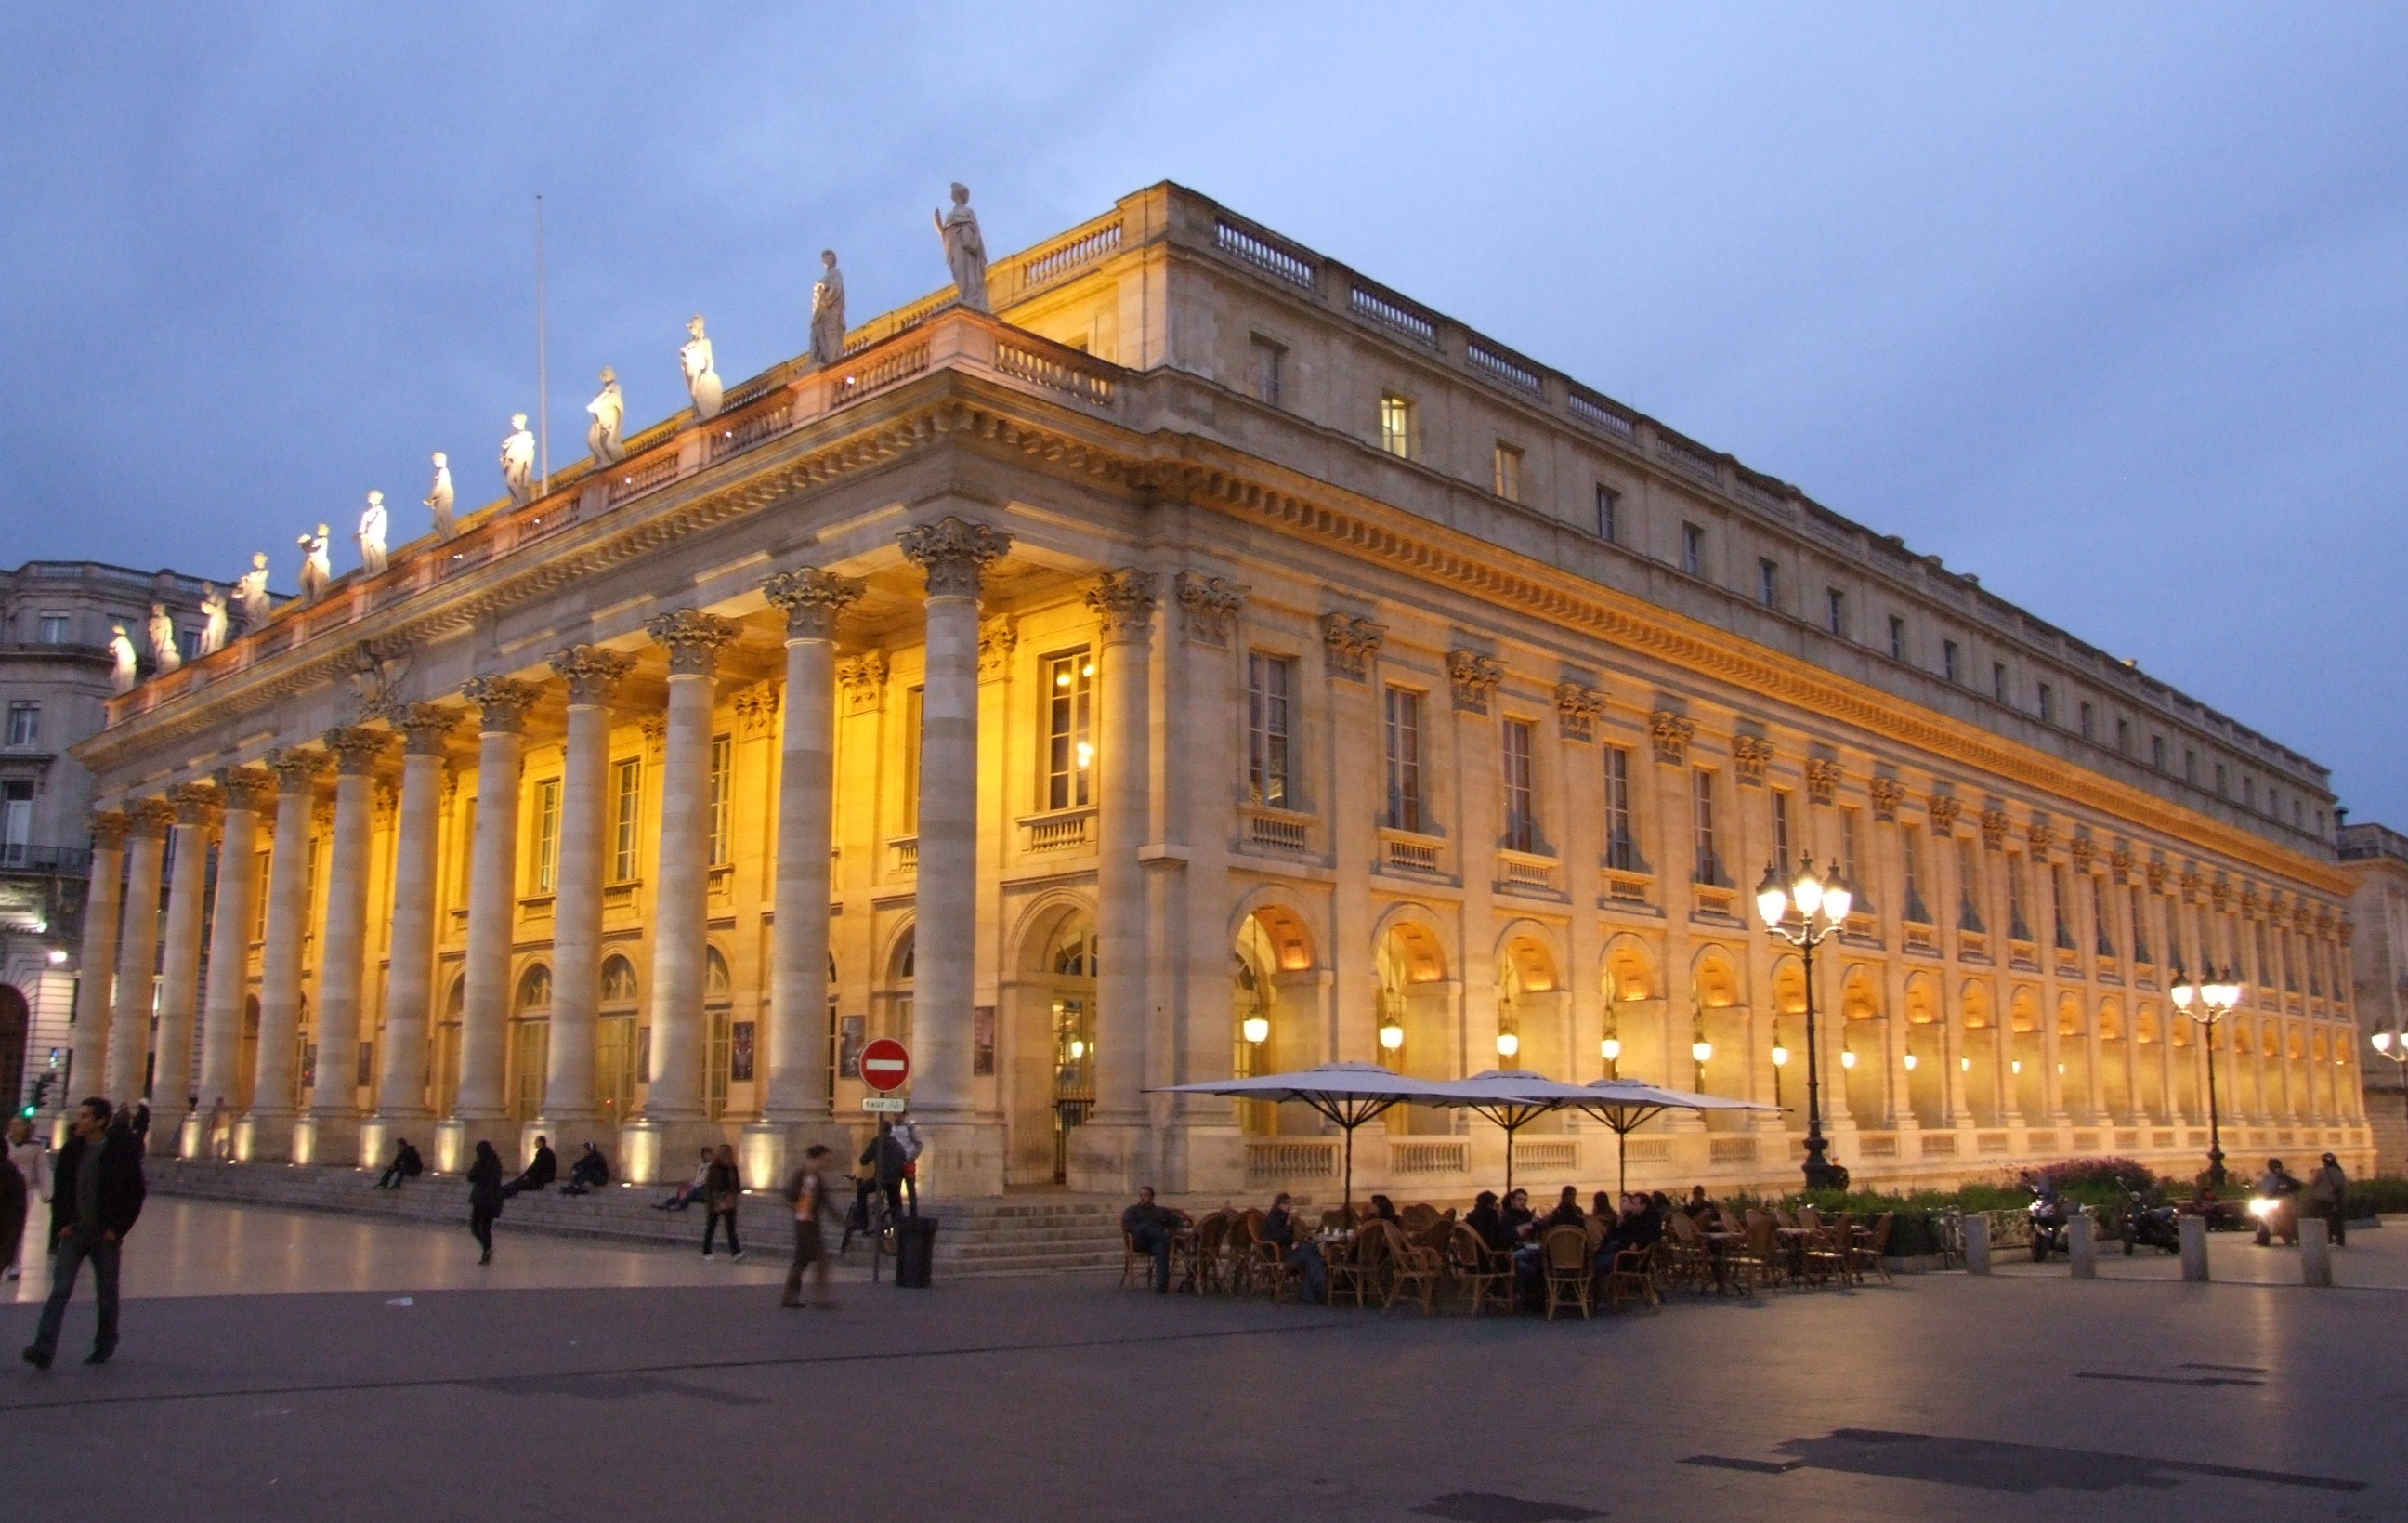 Bordeaux Grand Theatre